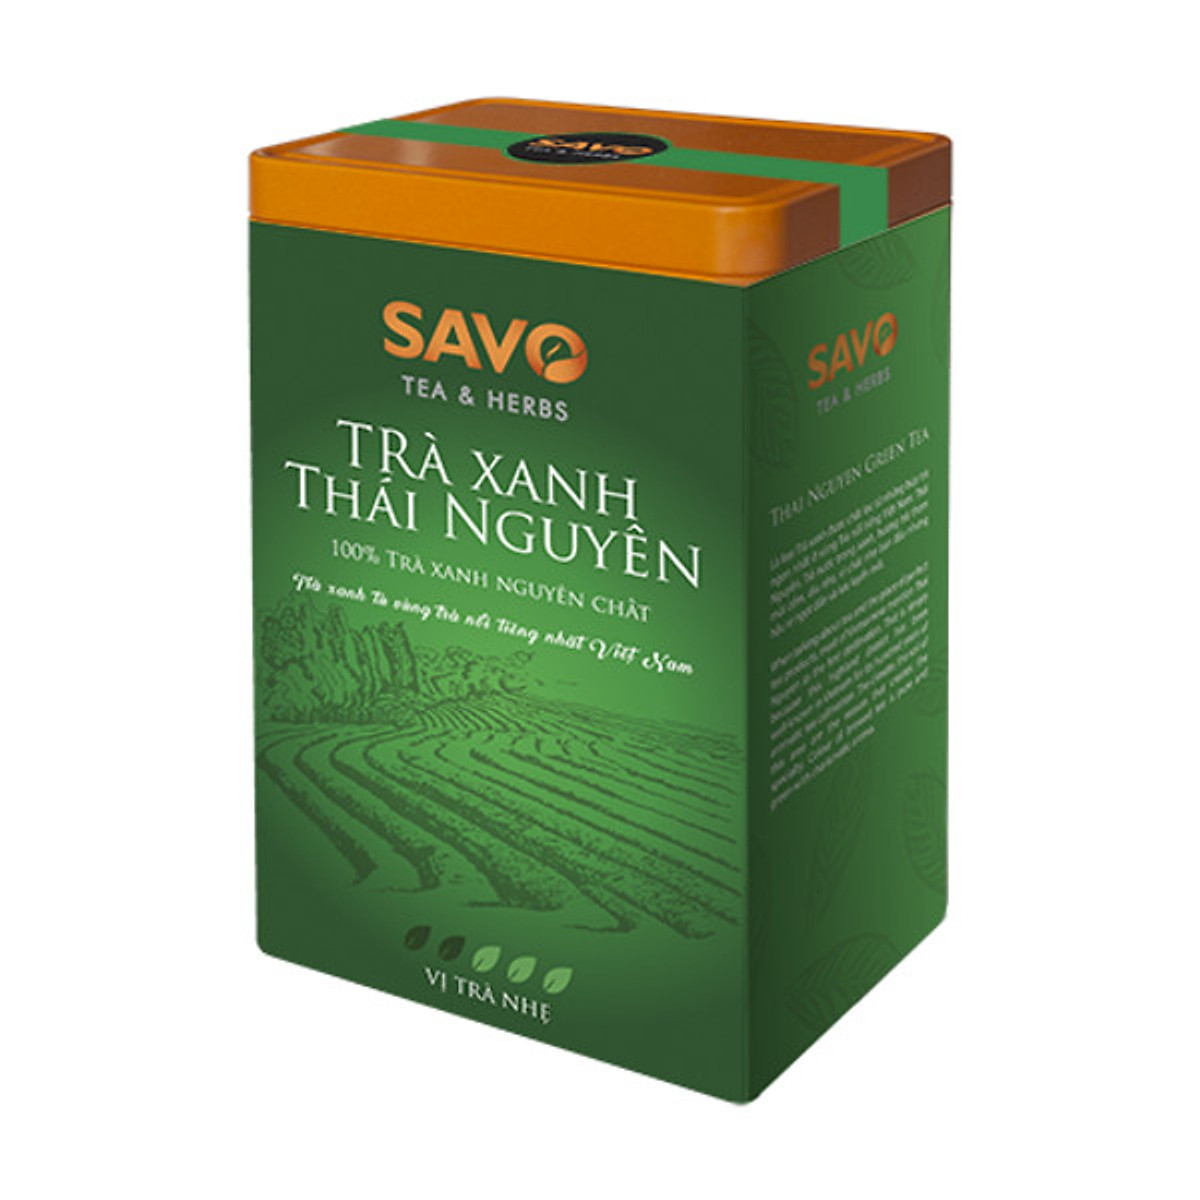 Trà Xanh SAVO Thái Nguyên (Thai Nguyen Green Tea) - Hộp 2 Túi x 100g